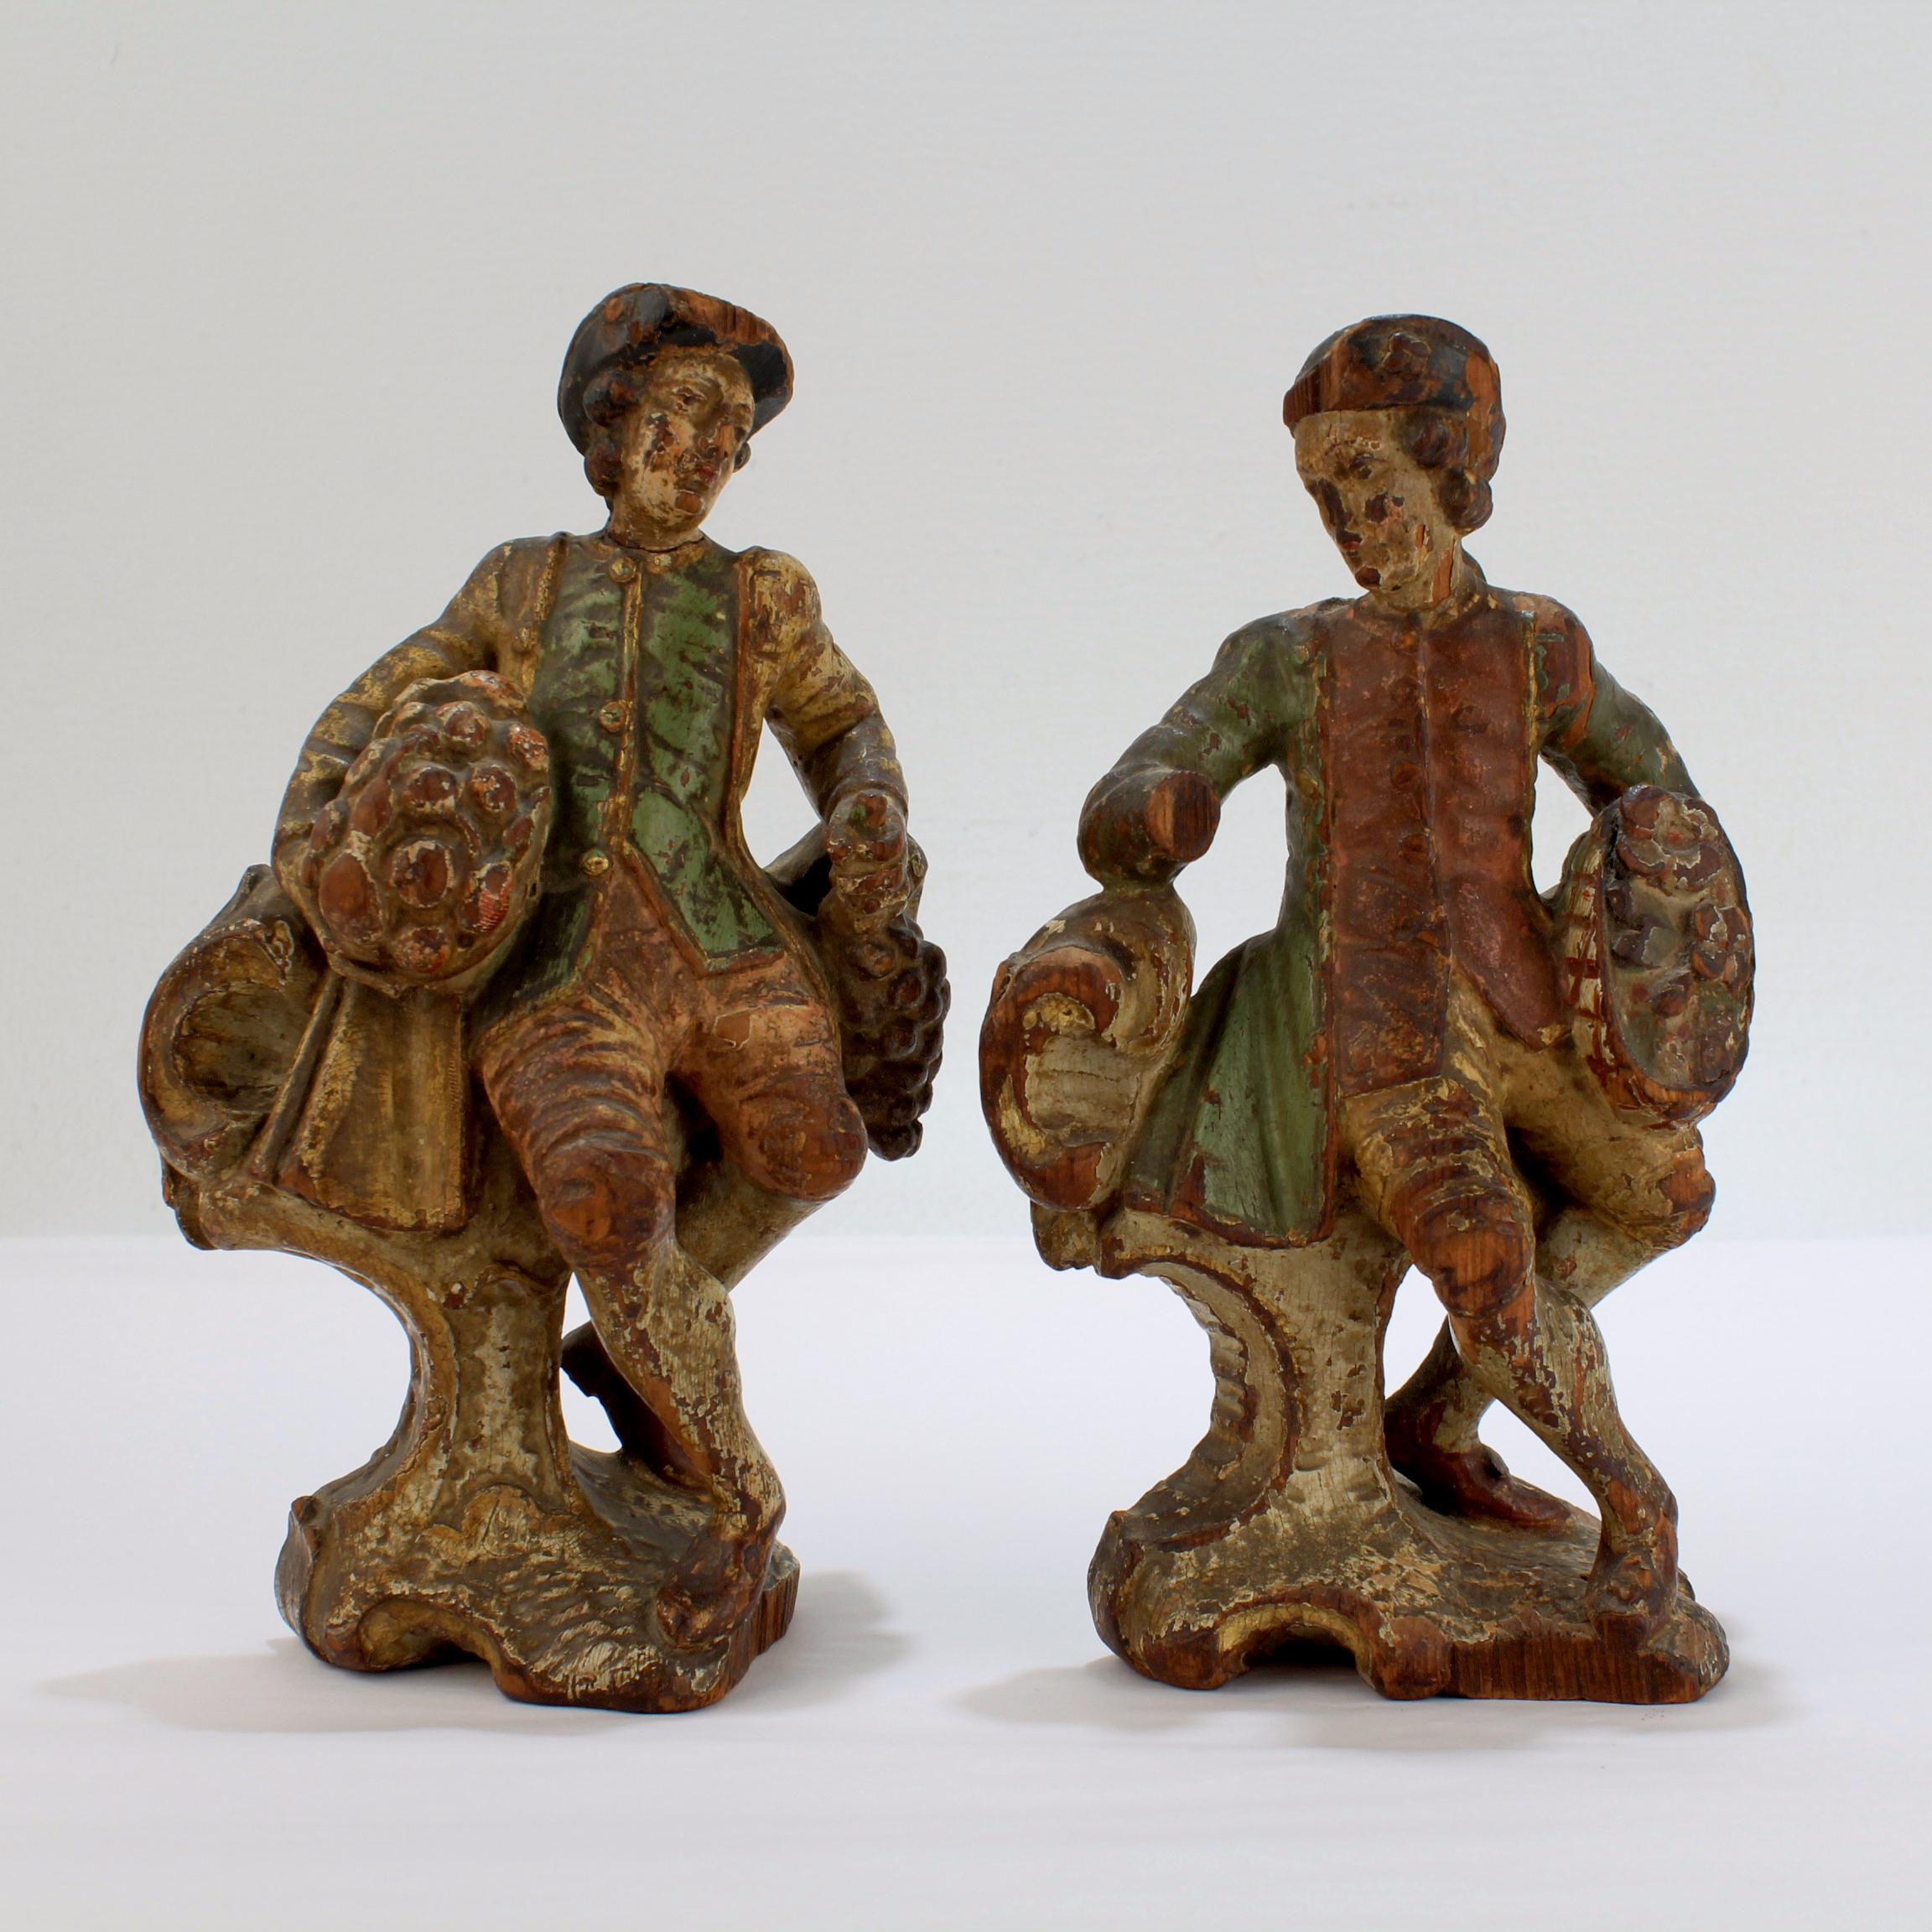 Paire de figurines en bois sculpté du XVIIIe siècle

Probablement d'Europe centrale, originaire d'Allemagne, d'Autriche, de Suisse ou d'Italie du Nord. 

Les deux figurines représentent un galant homme en costume d'époque tenant un panier rempli de